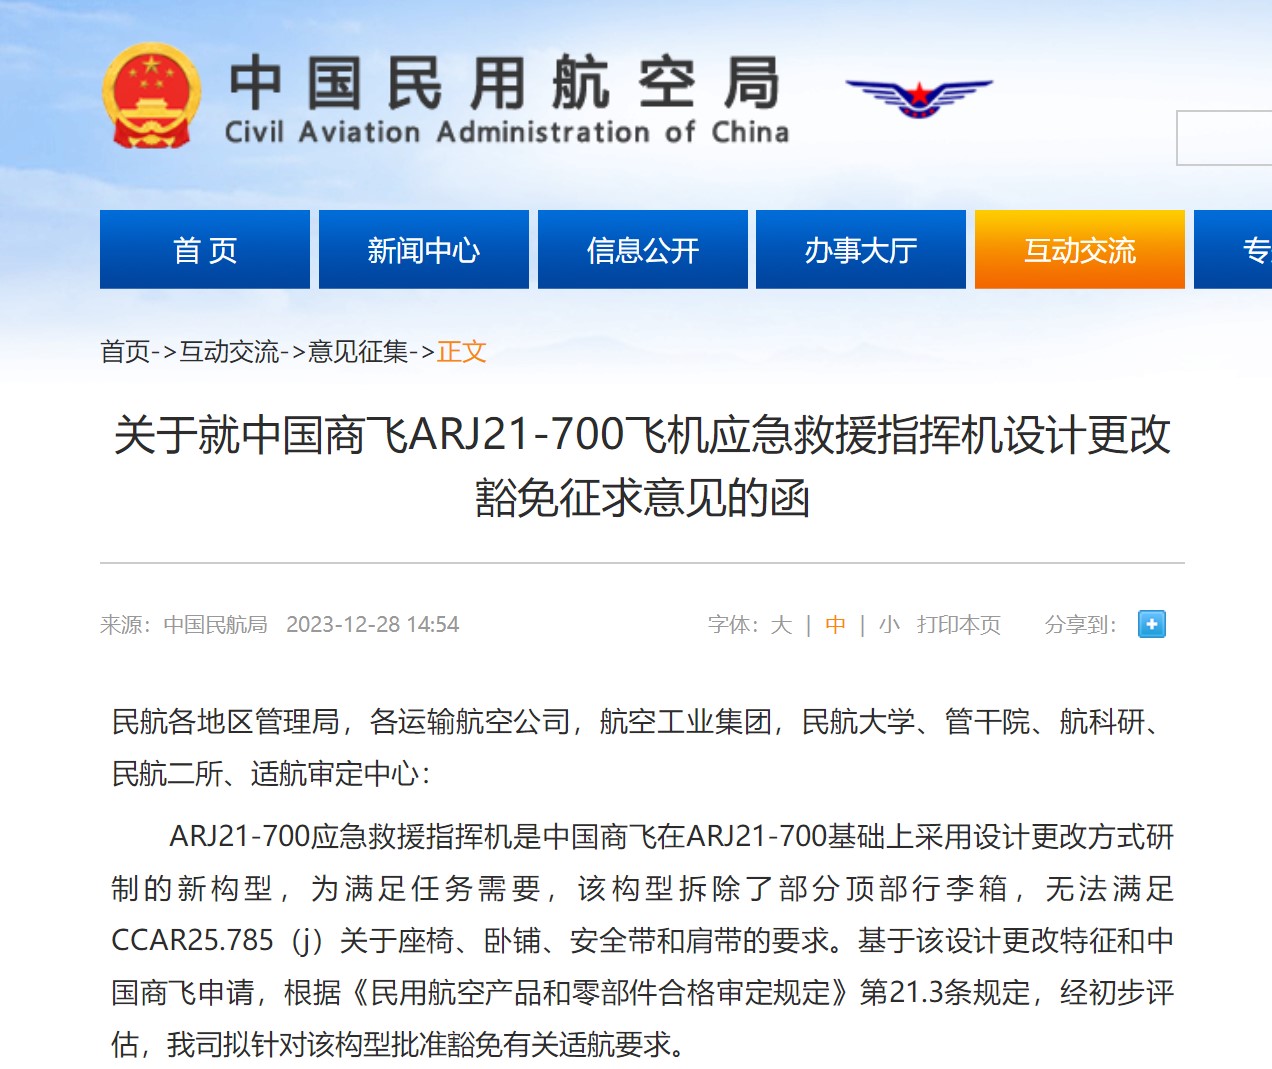 民航局发布关于就中国商飞ARJ21-700飞机应急救援指挥机设计更改豁免征求意见的函